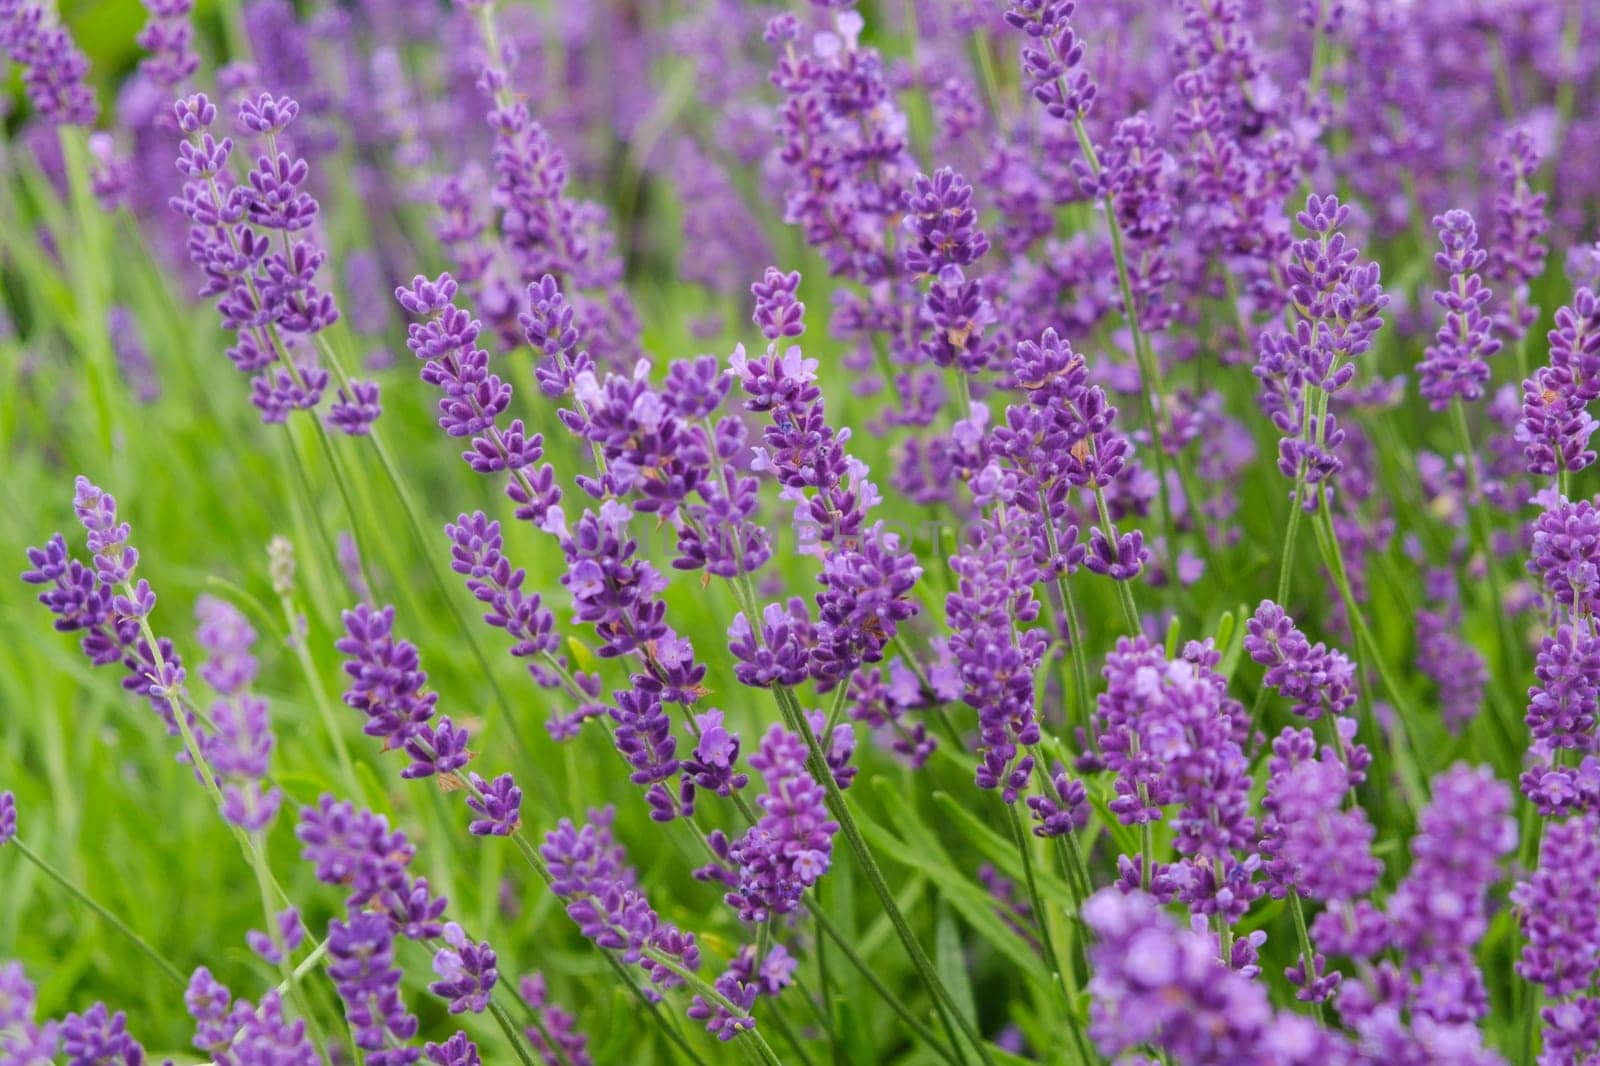 Soft focus flowers, beautiful lavender flowers blooming.